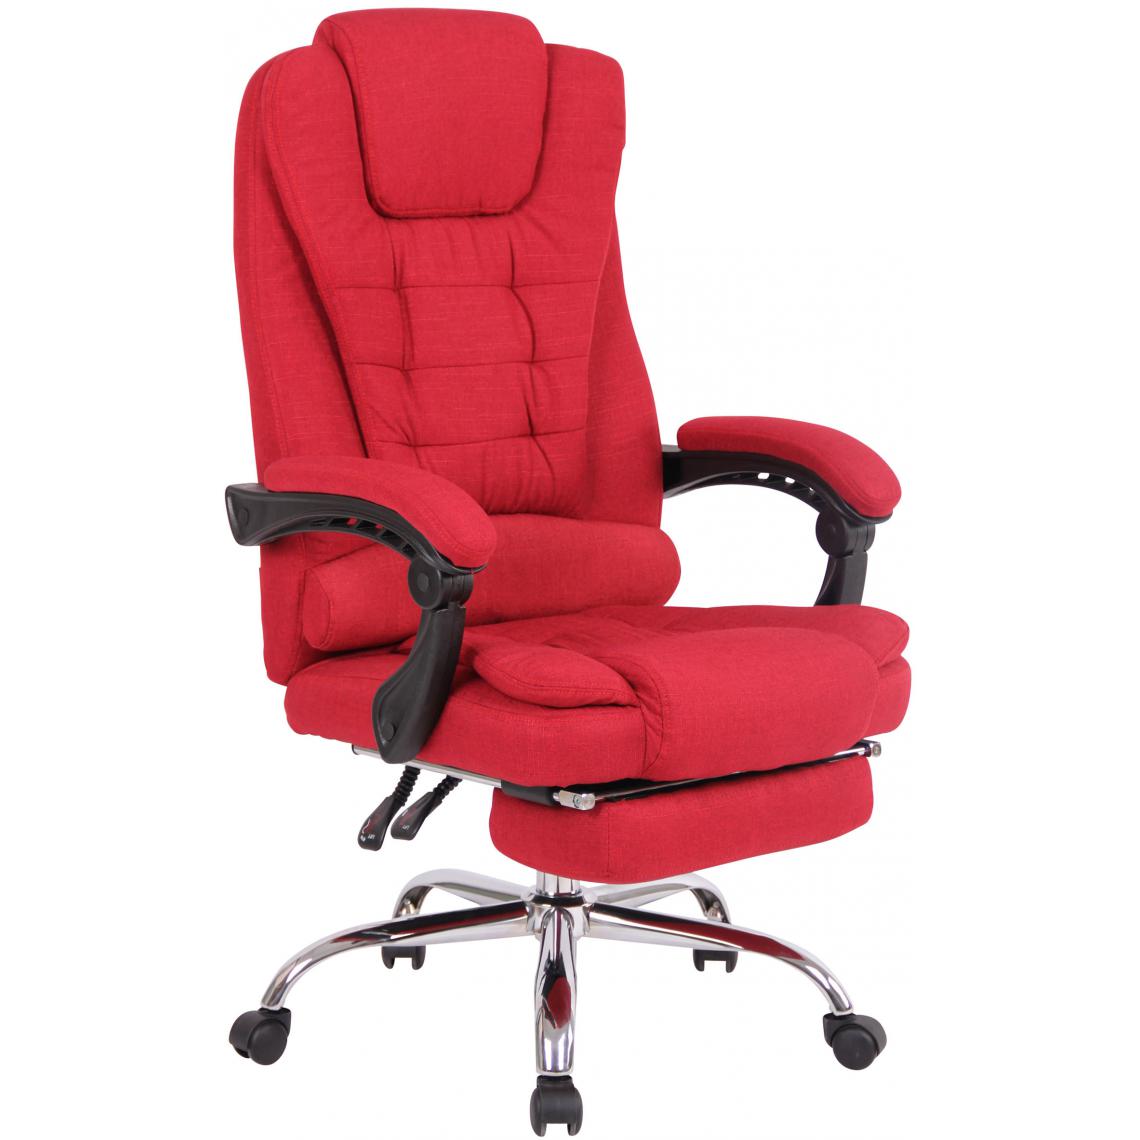 Icaverne - Splendide Chaise de bureau tissu collection Varsovie couleur rouge - Chaises